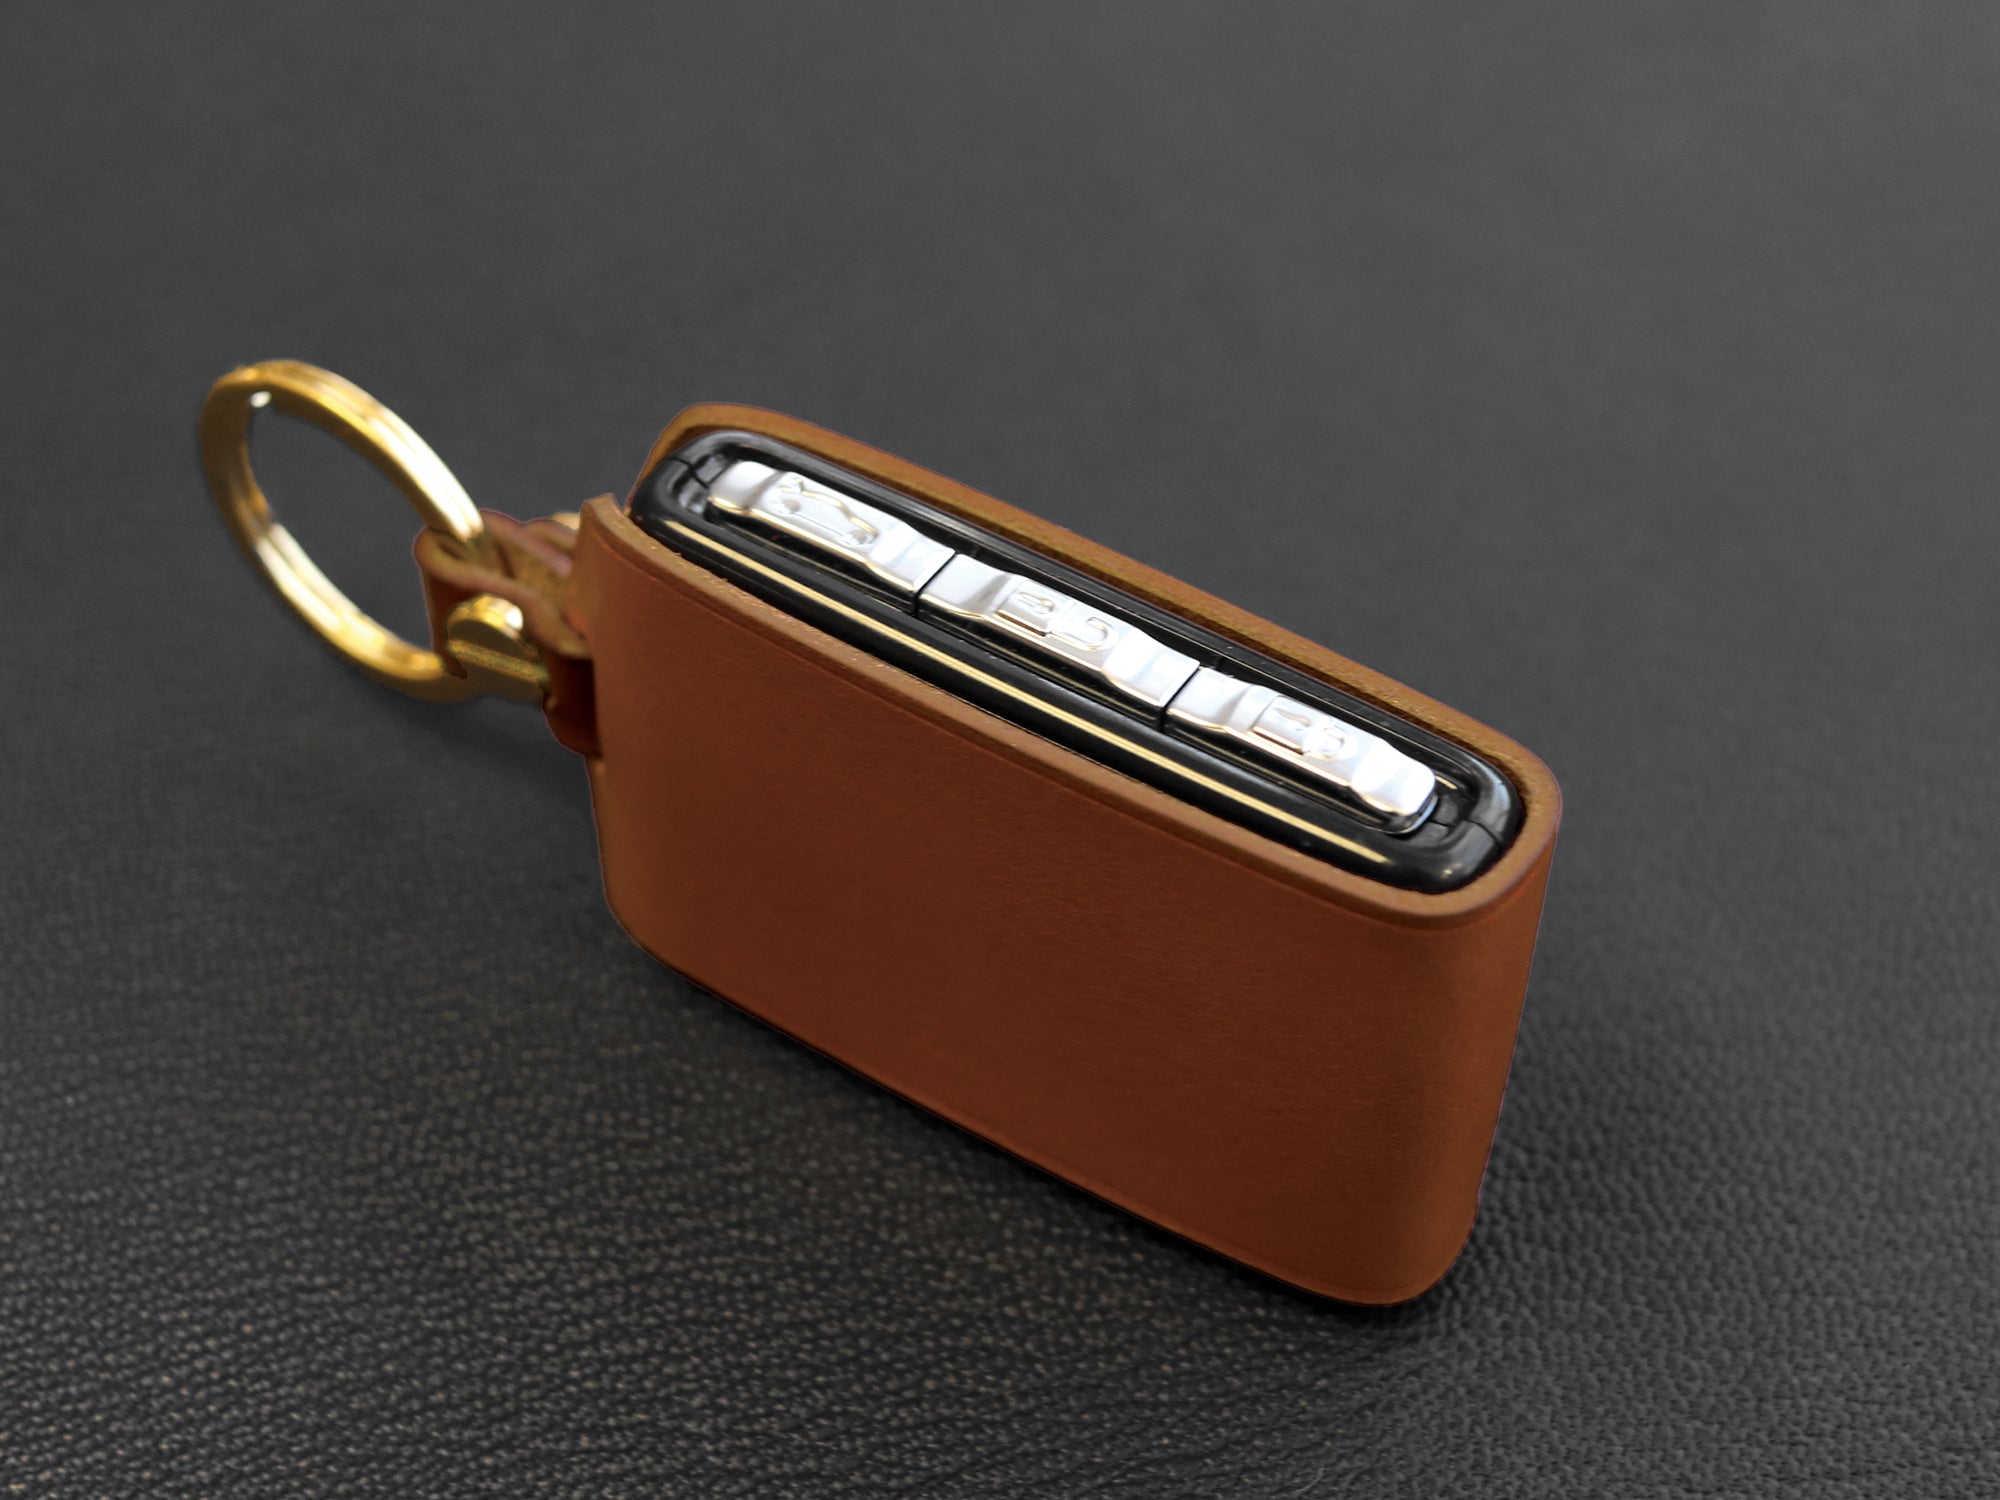 Subaru leather key case - Leather Brut